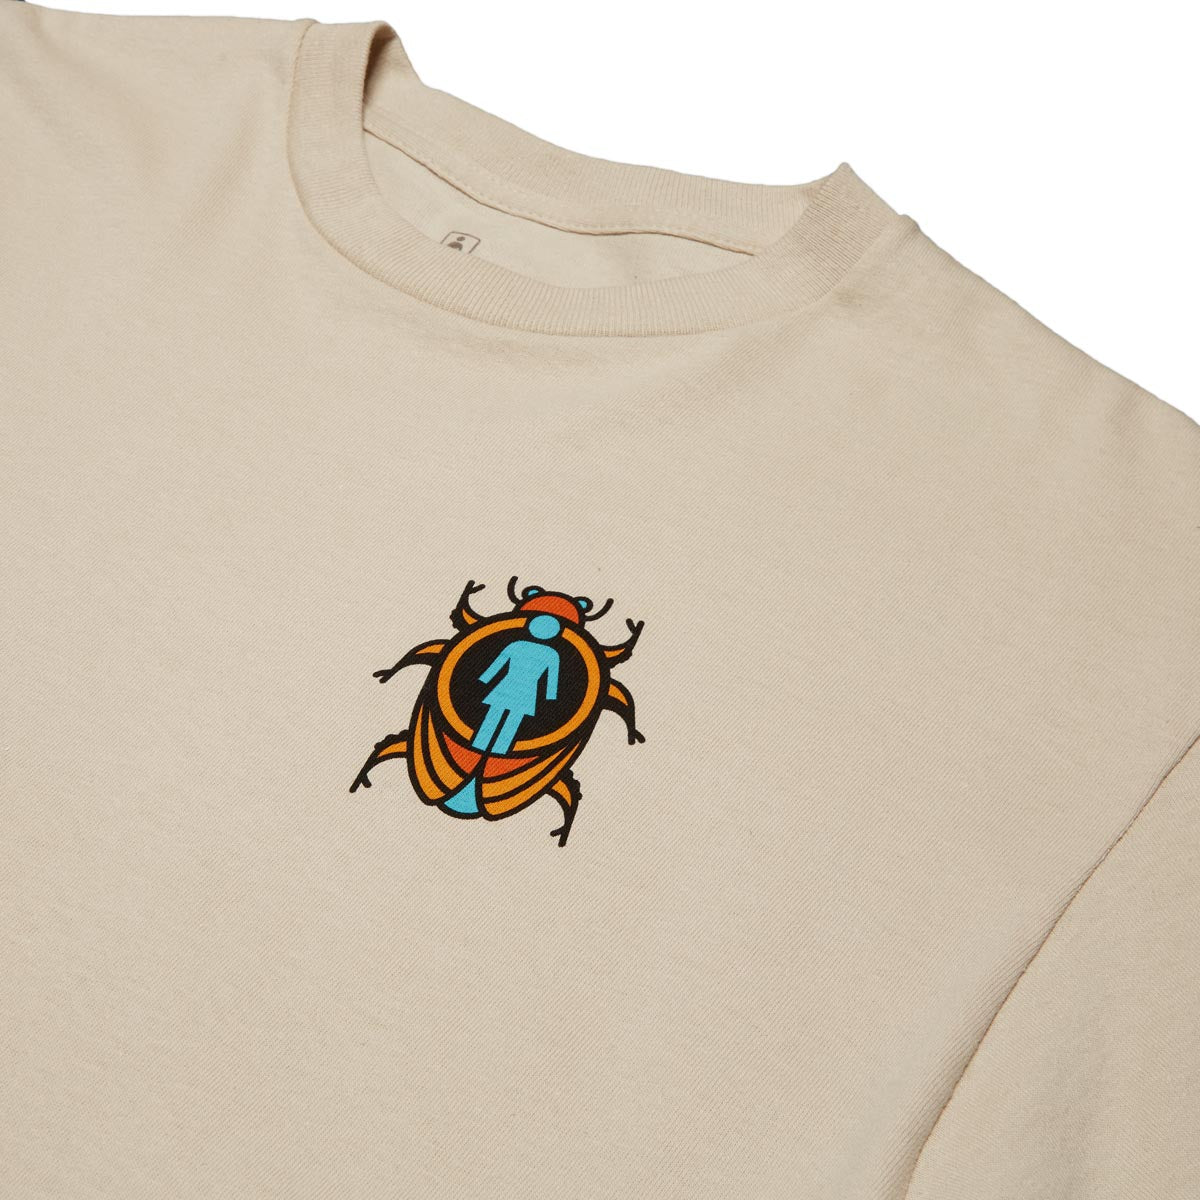 Girl Beetle Boss T-Shirt - Sand – CCS